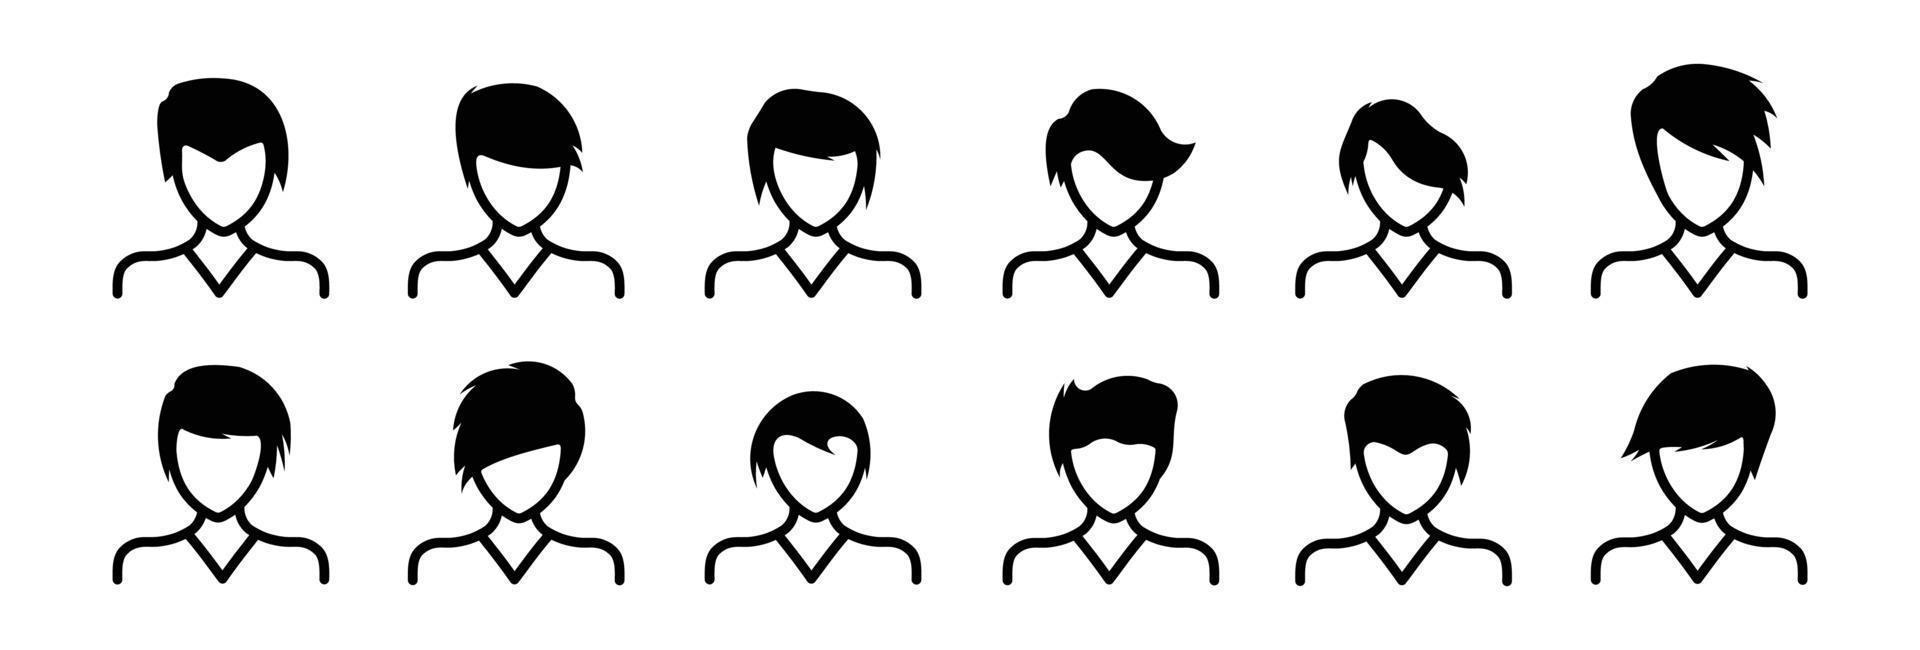 conjunto de iconos de avatar de personas estilo de pelo de hombres, icono plano vectorial como diseño de ilustración masculina vector